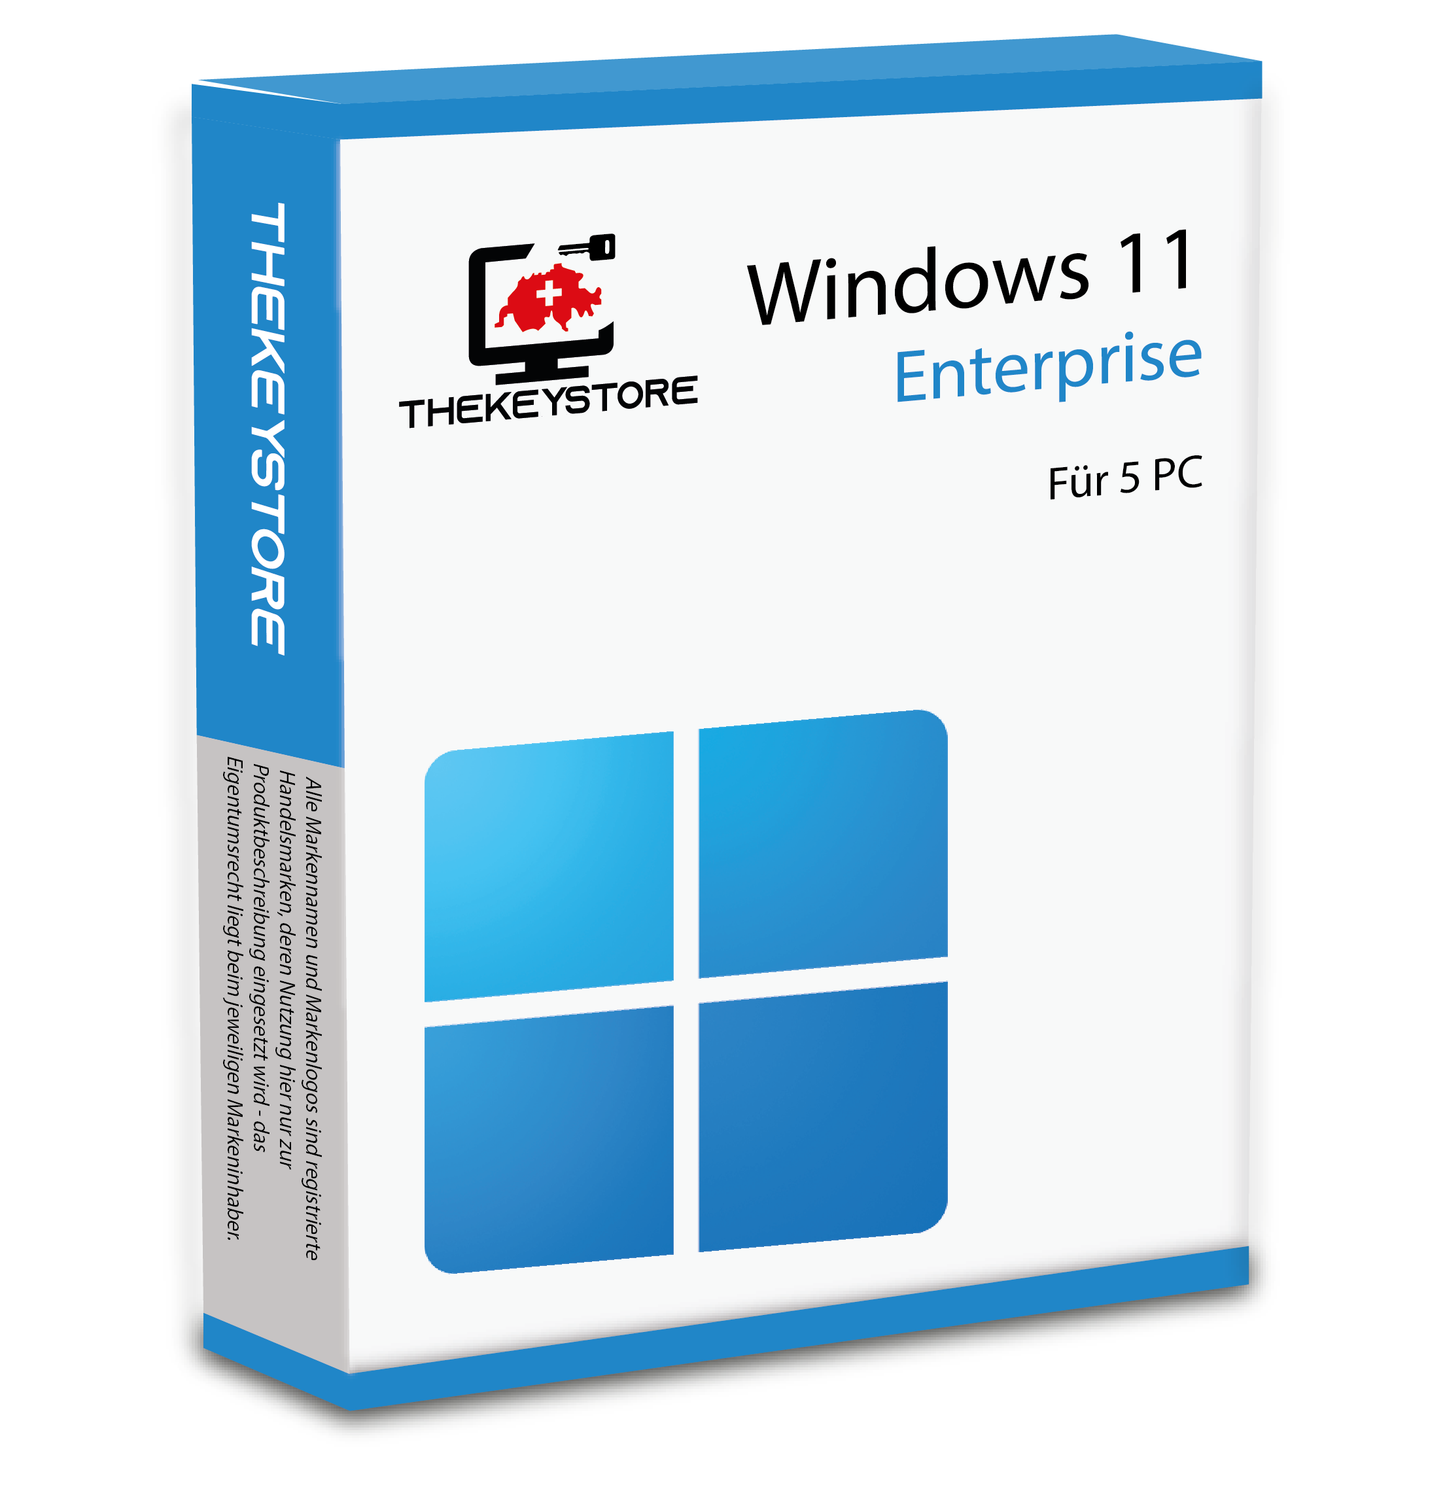 Microsoft Windows 11 Enterprise - Für 5 PC - TheKeyStore Schweiz